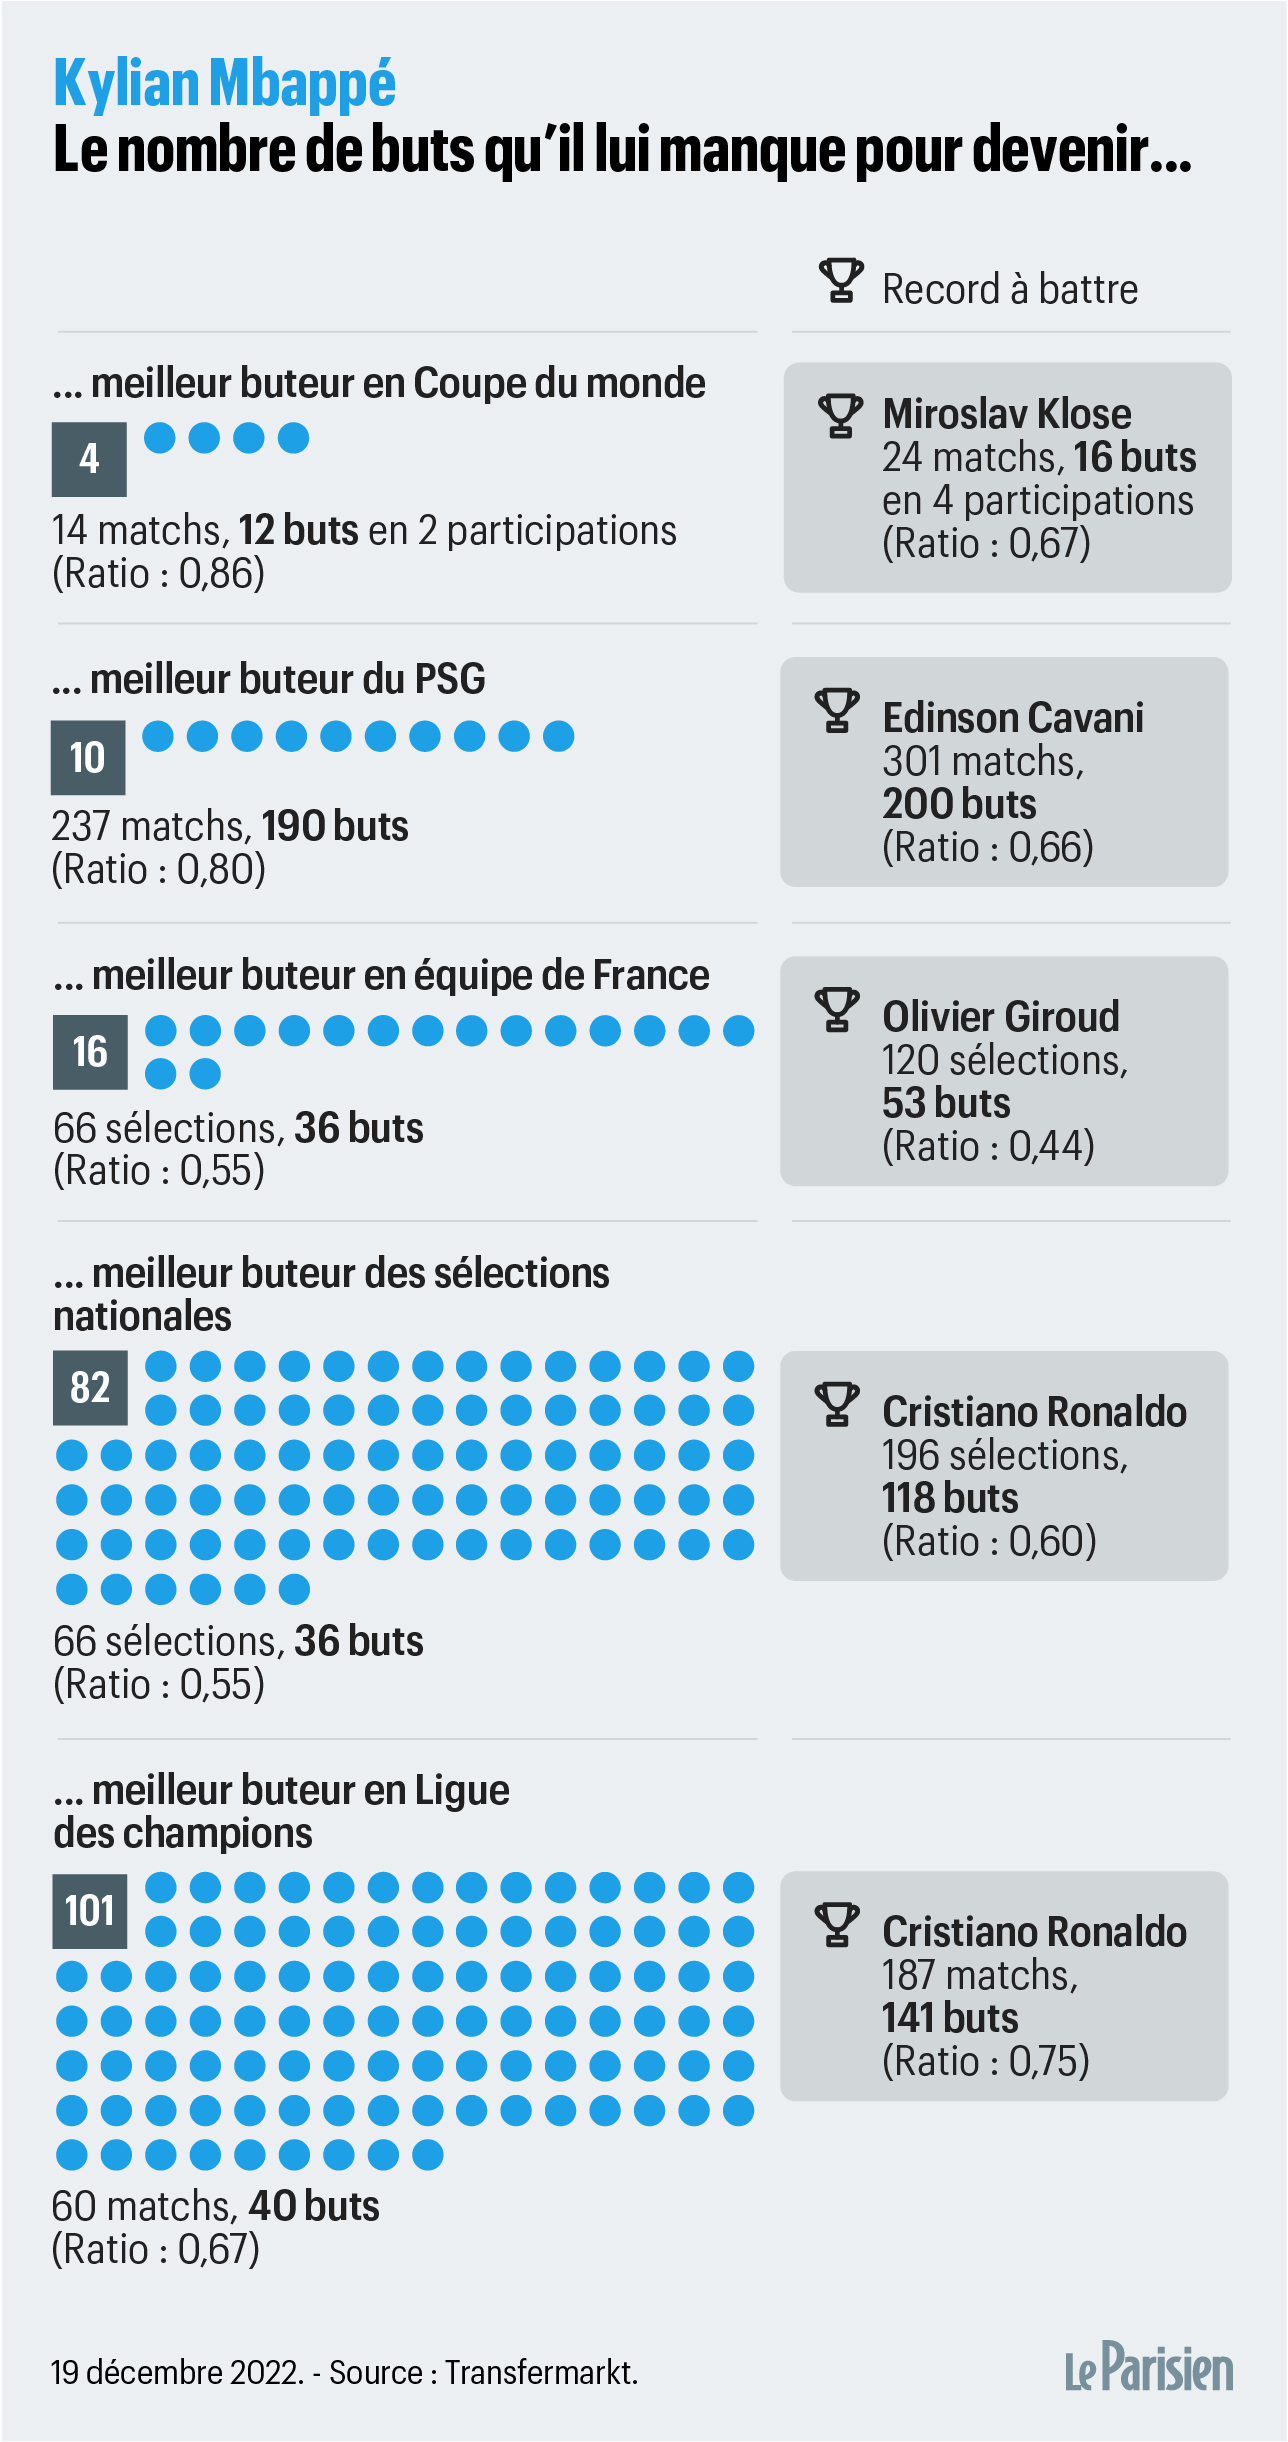 PSG : « Joyeux anniversaire légende », le beau message de Kylian Mbappé  pour les 36 ans de Lionel Messi - Le Parisien